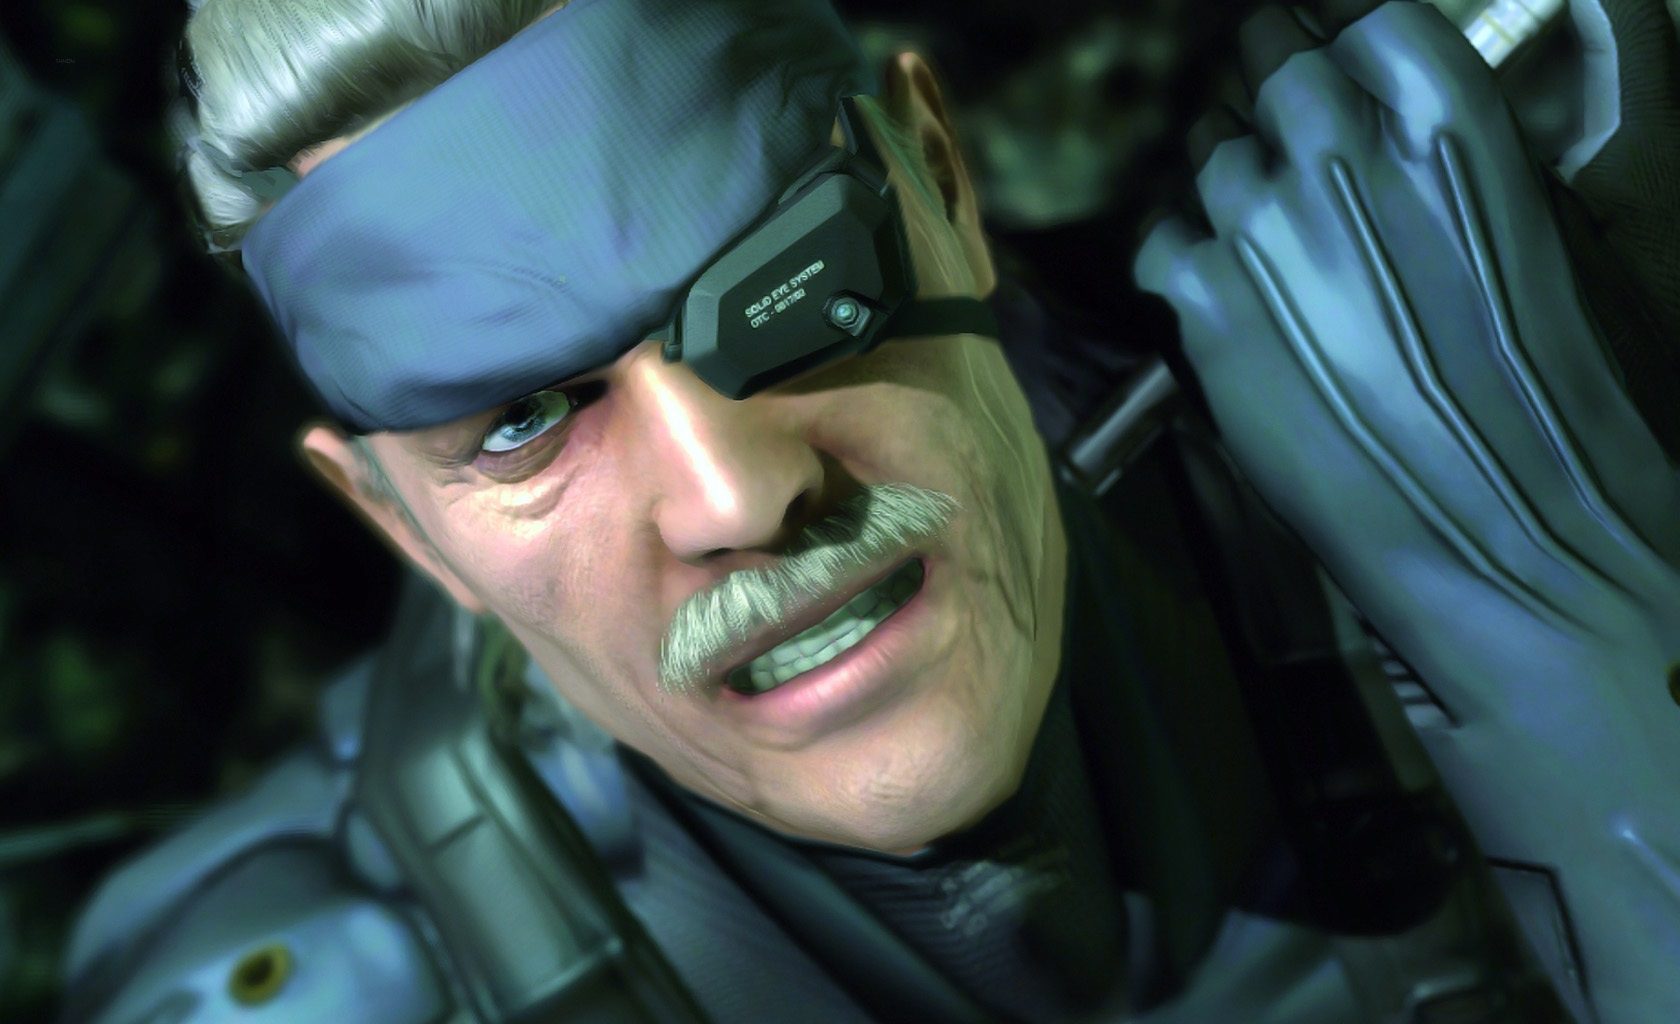 Metal Gear Solid 4 erreicht auf RPCS3, dem PlayStation 3-Emulator, bereits 60 FPS in 4K-Auflösung